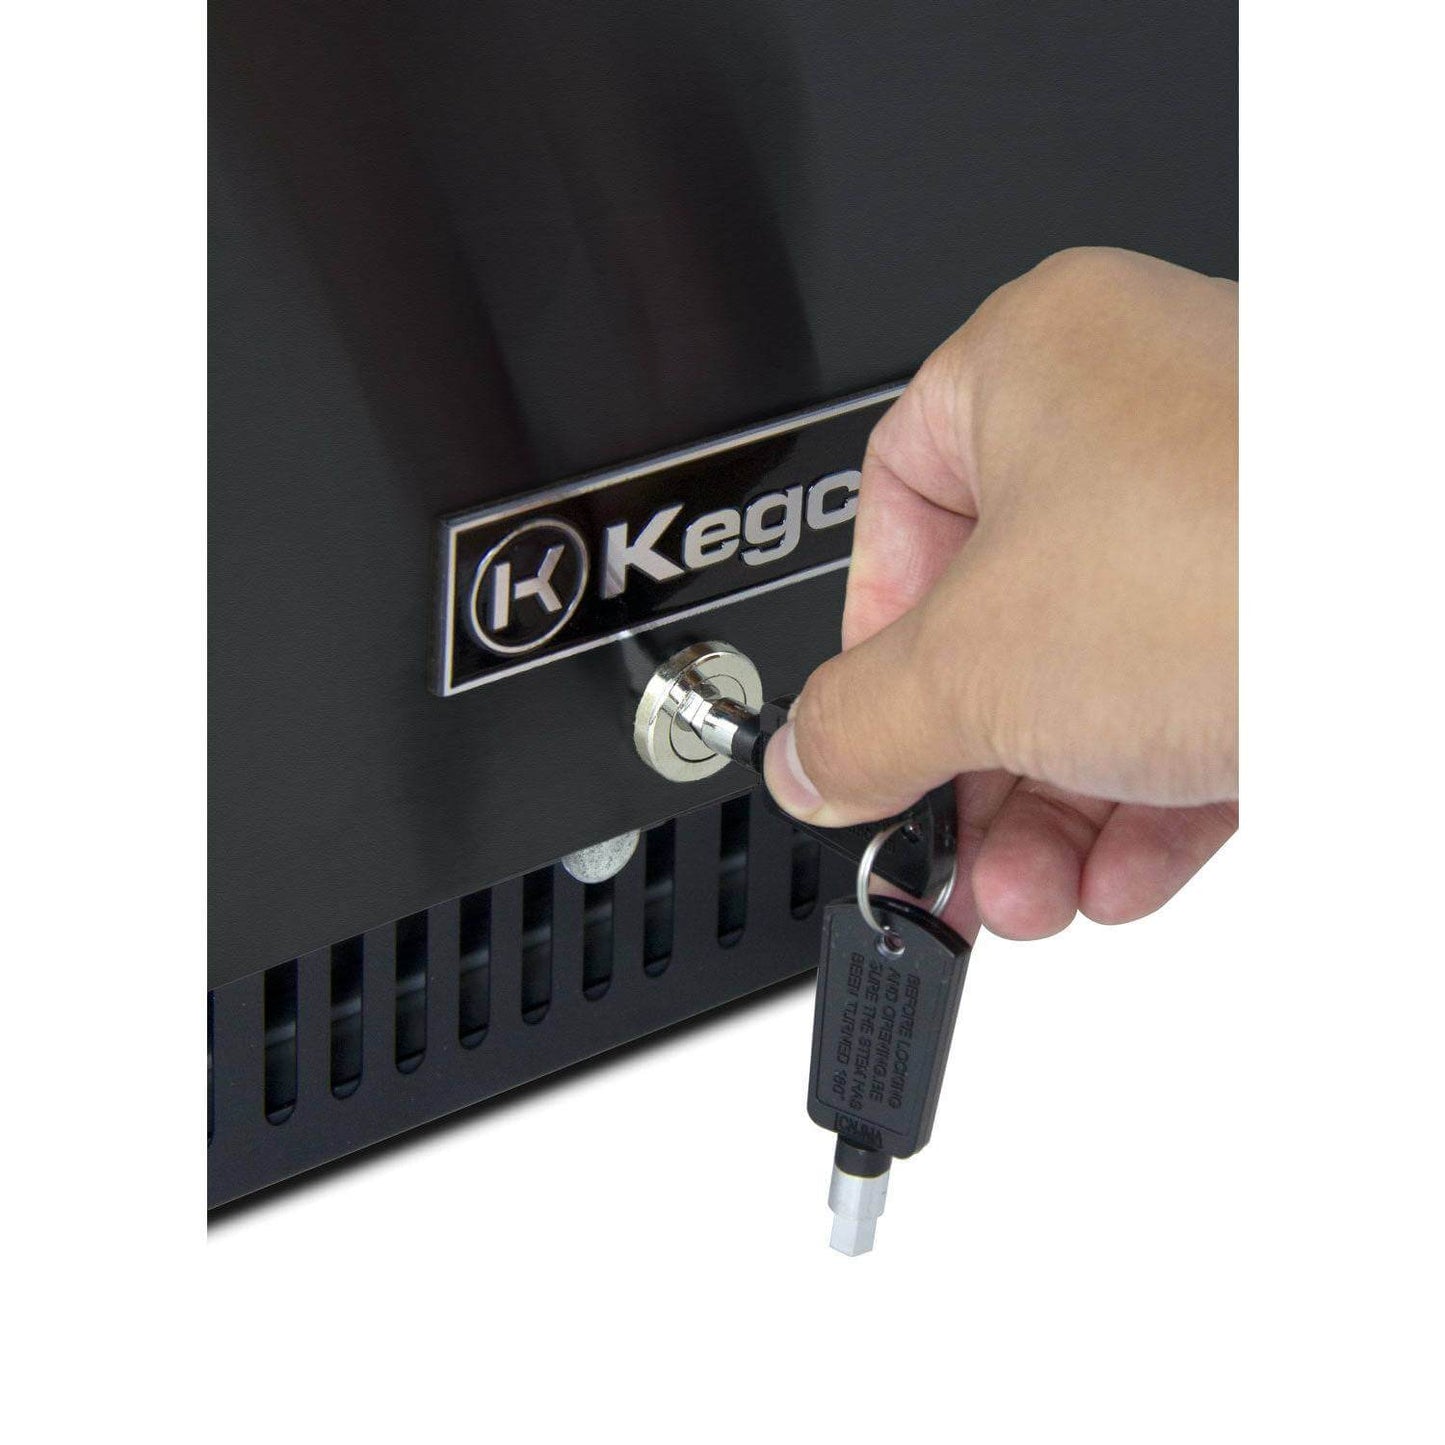 Kegco 15" Wide Homebrew Single Tap Black Commercial Kegerator